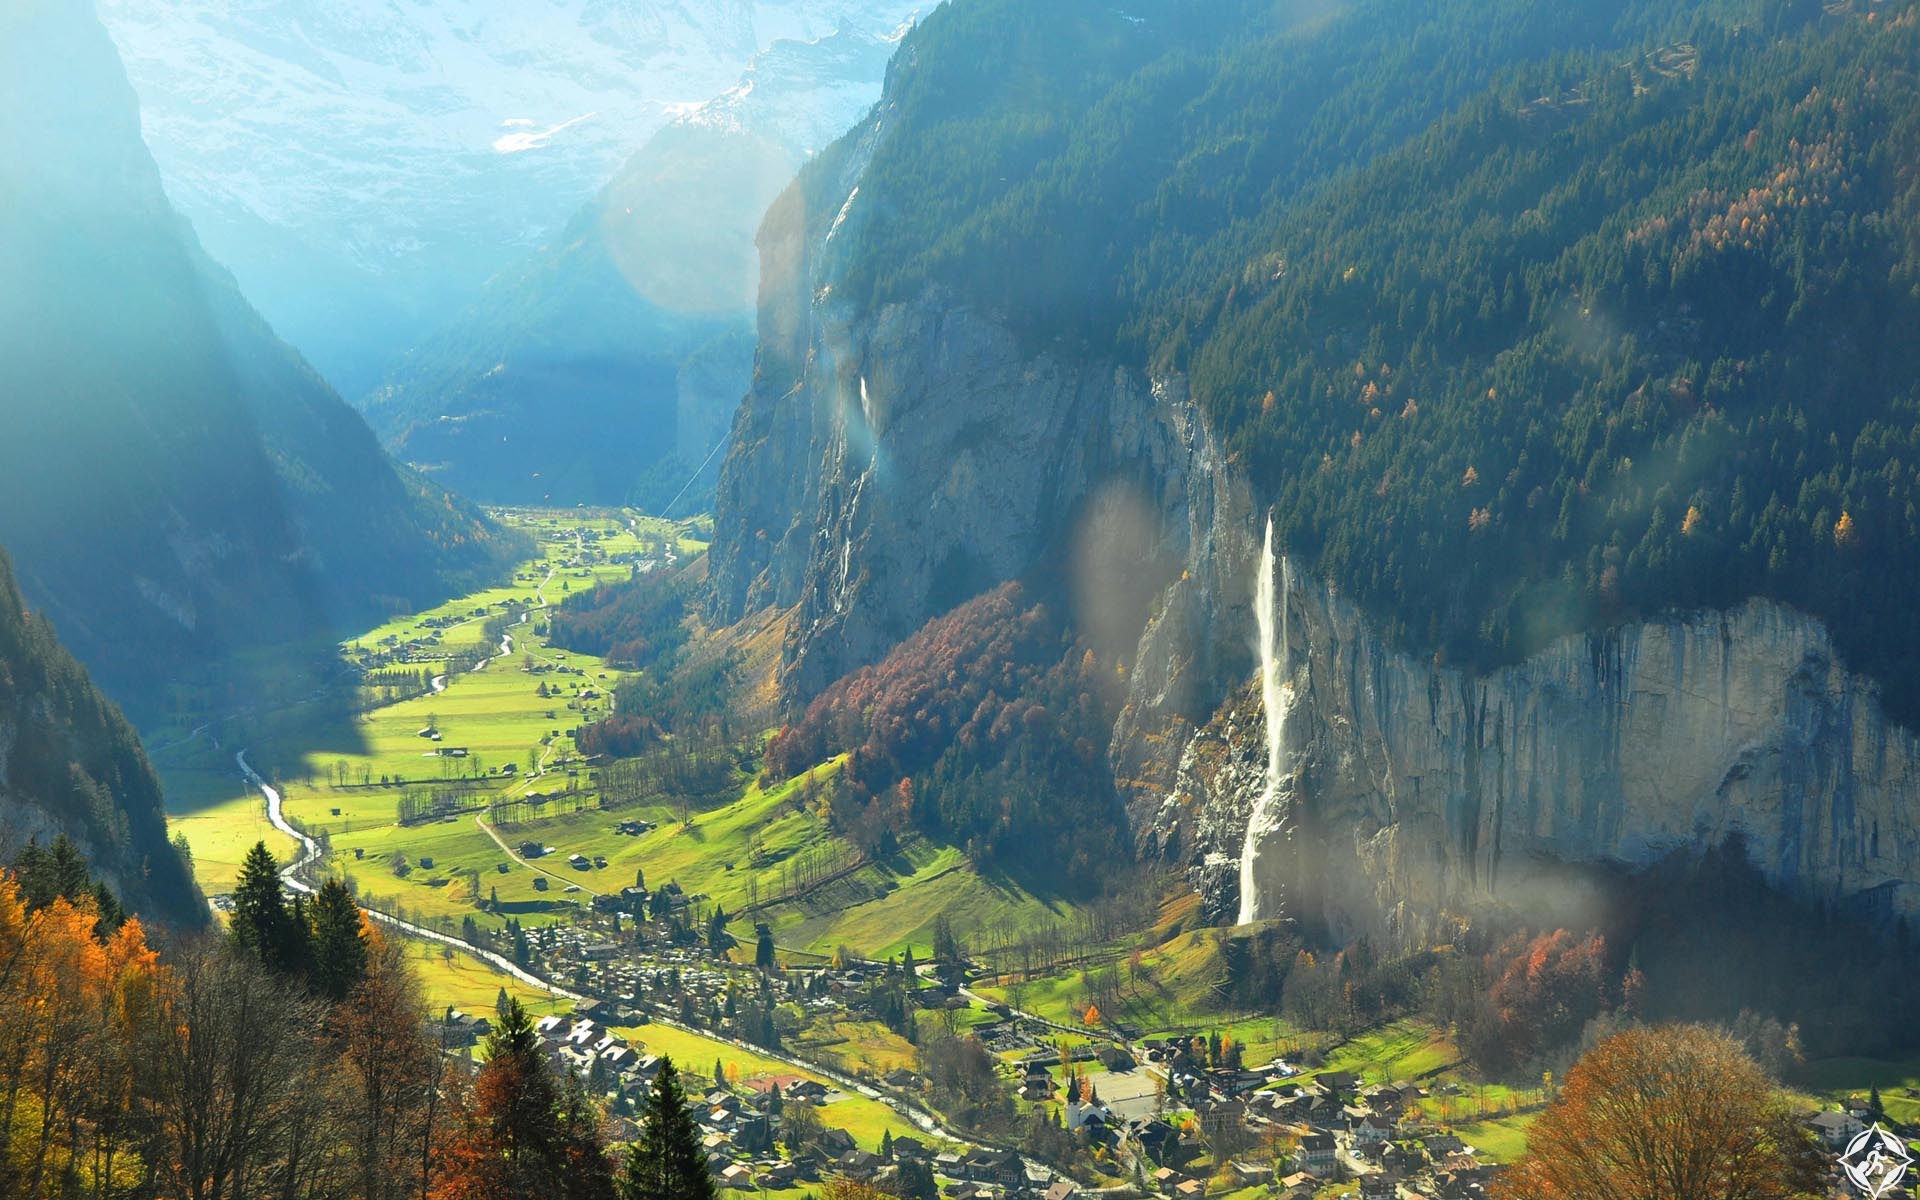 اجمل مدن سويسرا وتقرير عن السياحة في سويسرا بالصور 